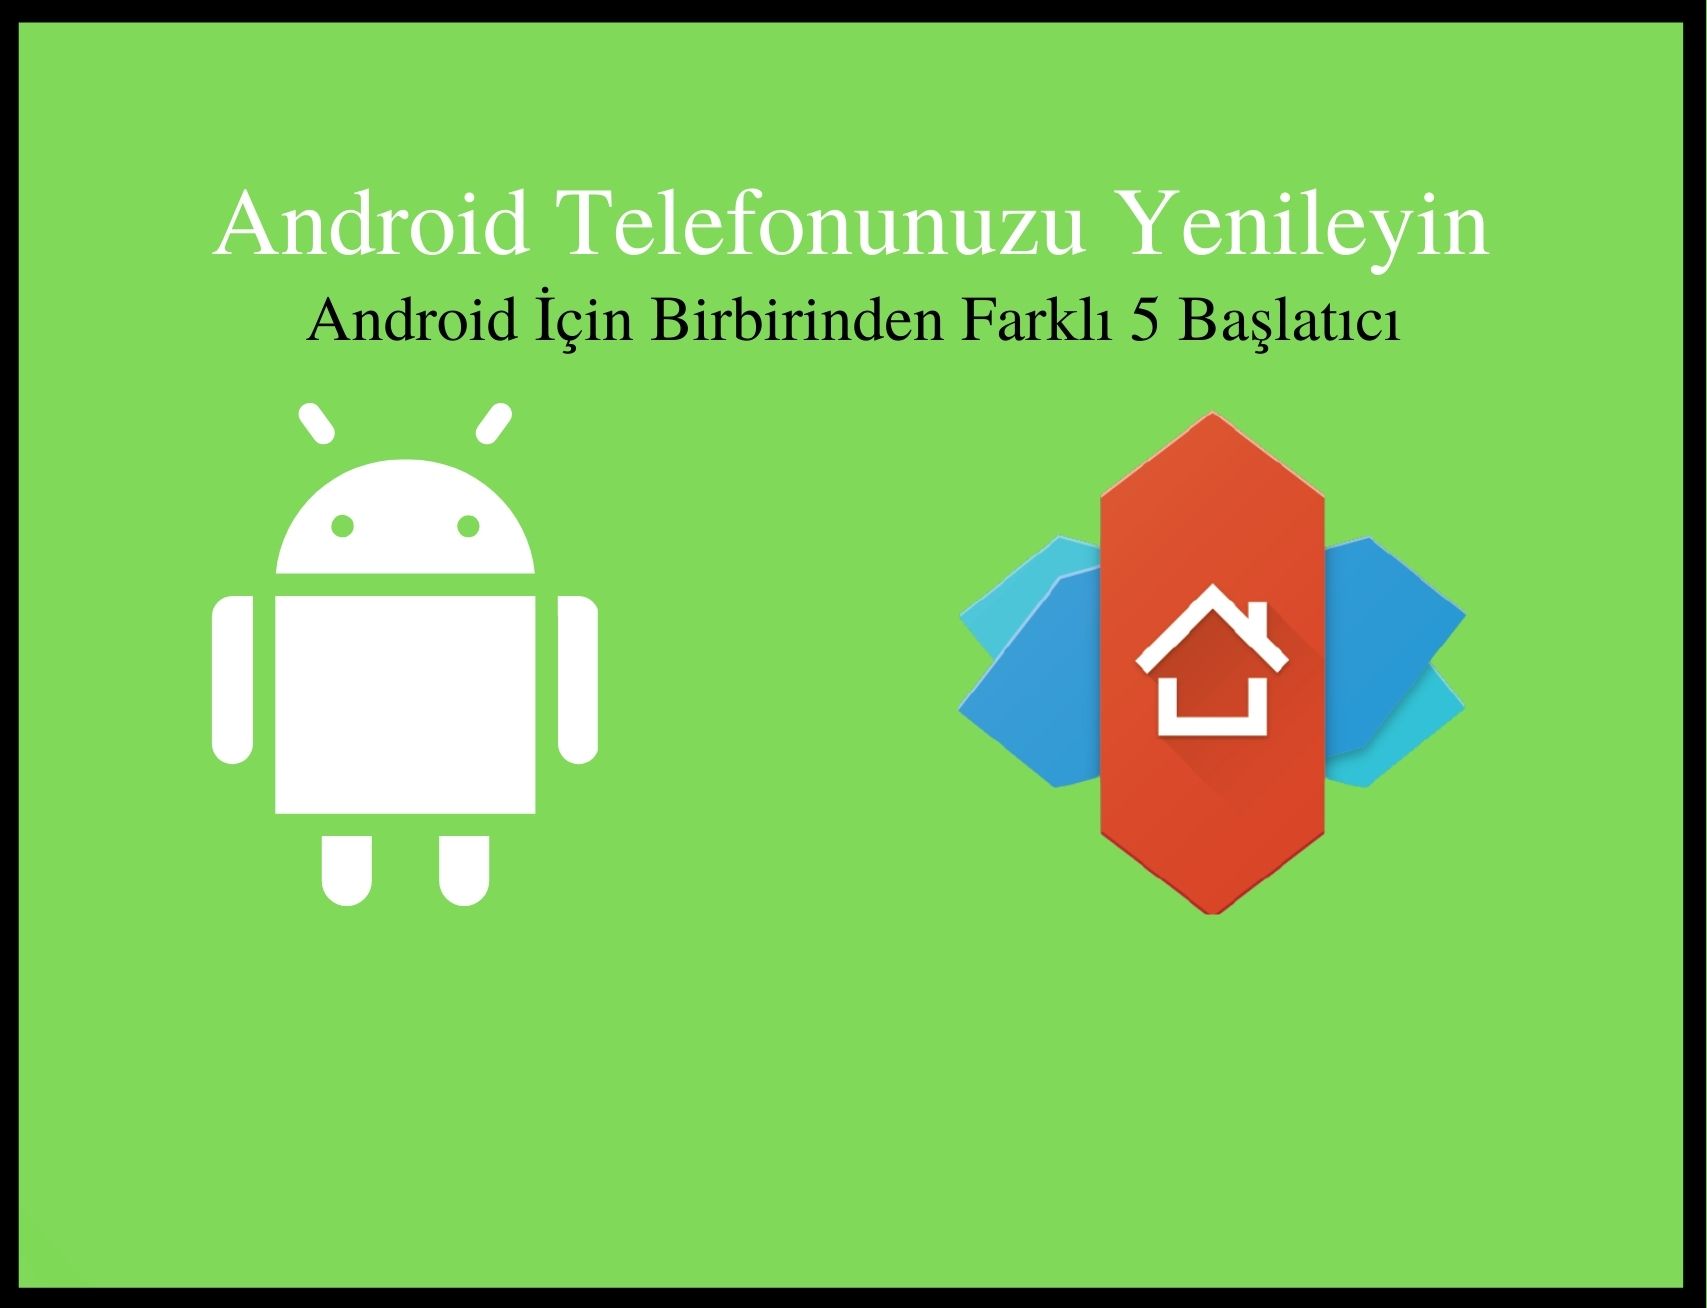 Android Telefonunuzu Değiştirin, Android İçin Hızlı ve Farklı 5 Launcher